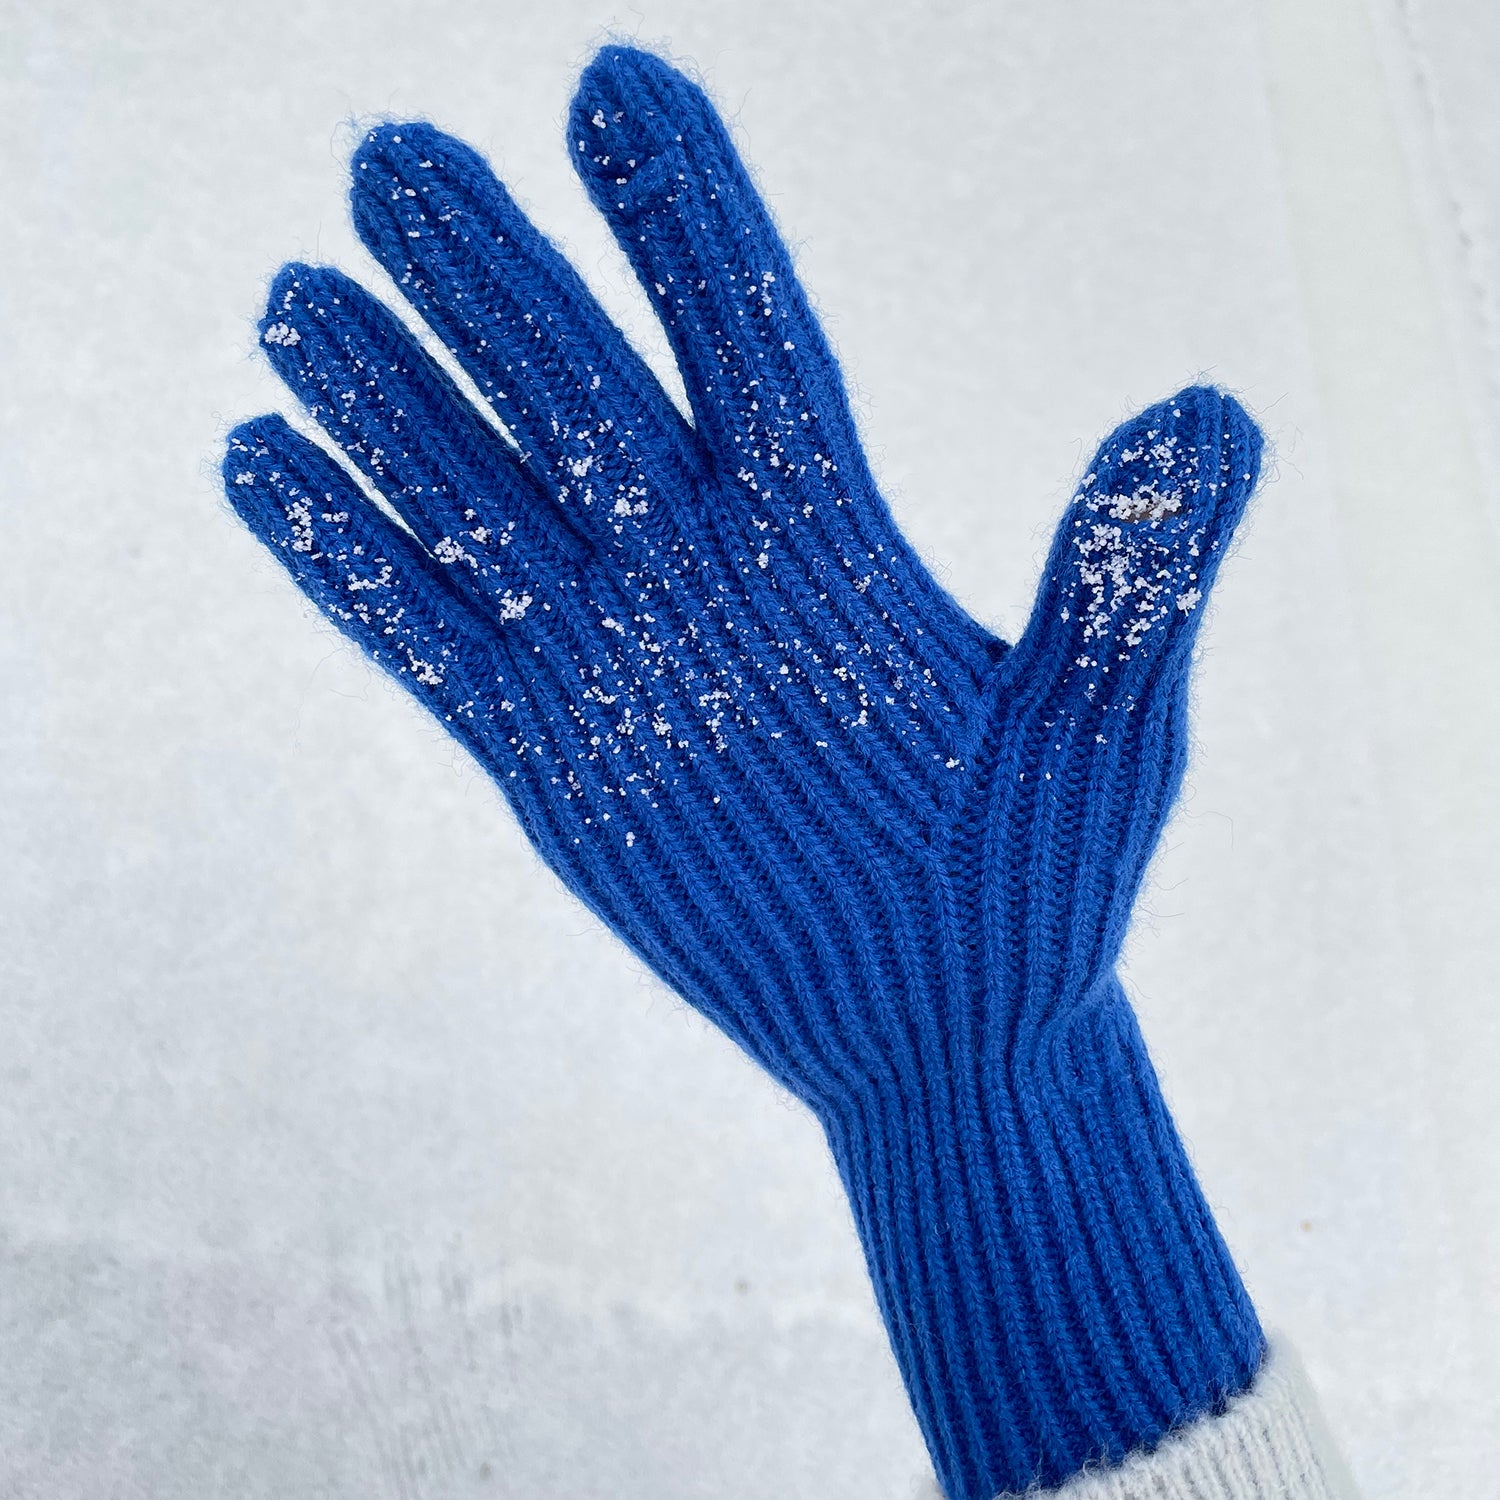 Color Knit Gloves